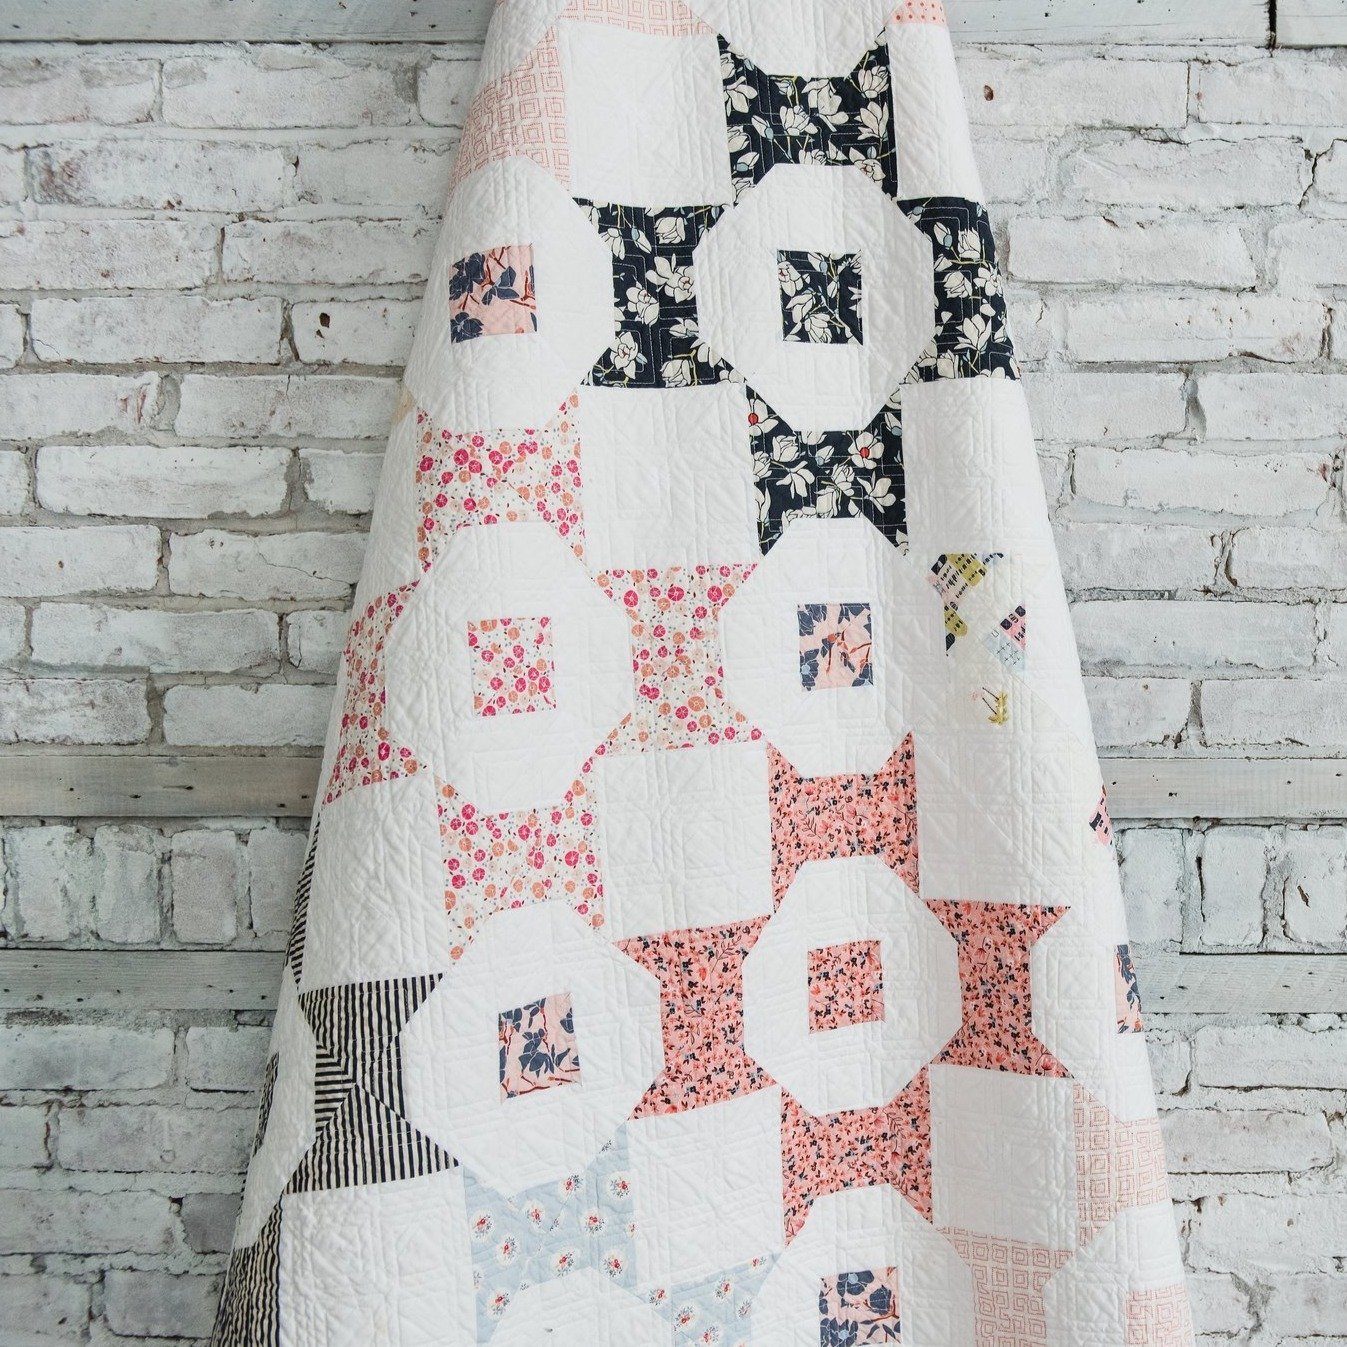 Bowtie Flower Quilt Pattern - Floss Candy